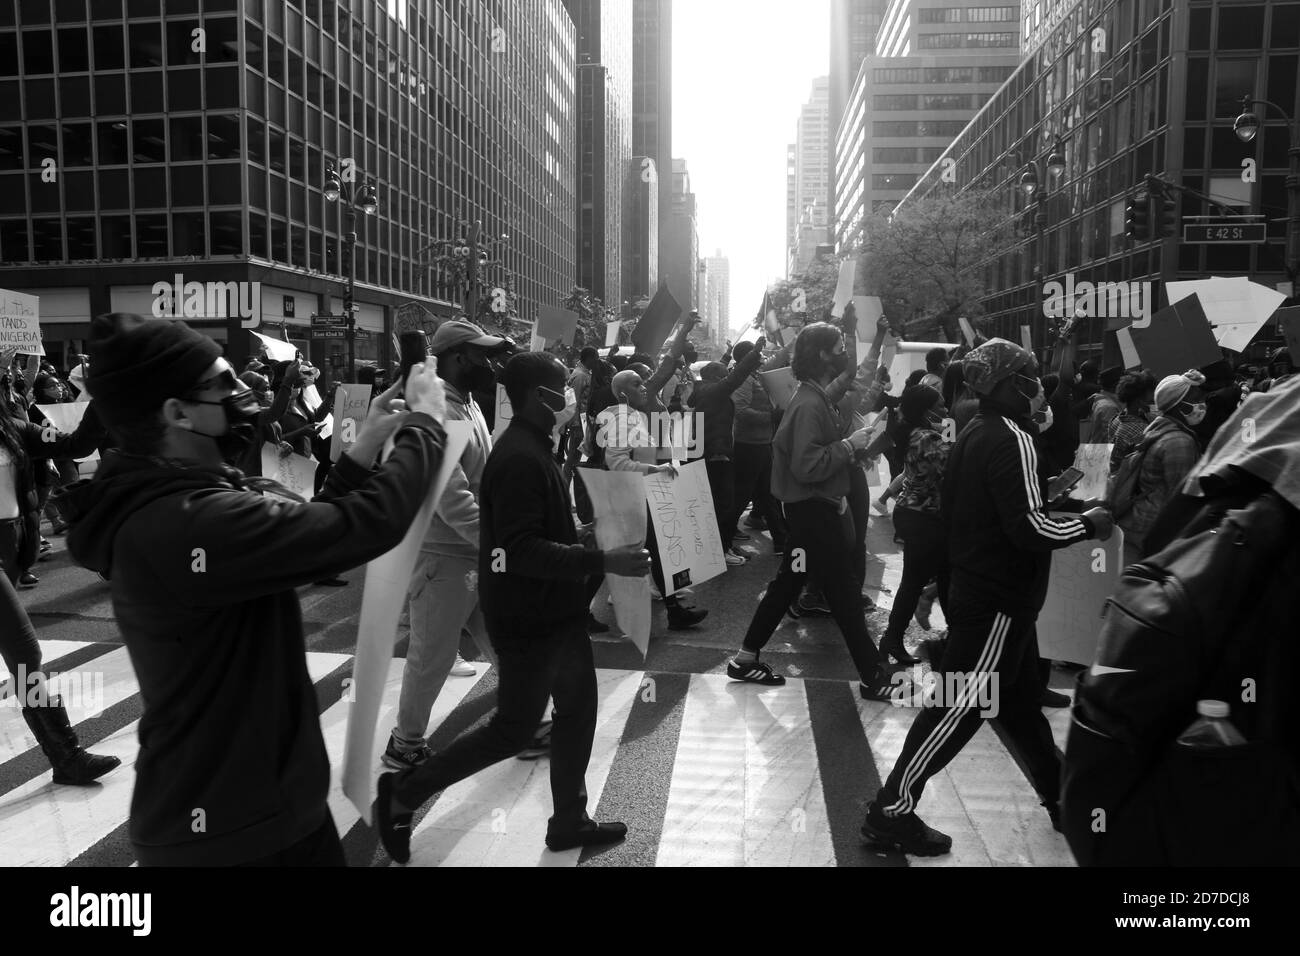 NEW YORK, NY – OKTOBER 21: Nigerianische Amerikaner und New Yorker besuchen den "March for Nigerian Lives" in Solidarität mit Protesten gegen Polizeibrutalität und Korruption in der Stadt Lagos in Nigeria, Afrika, wo friedliche Proteste zu Tötungen mehrerer Demonstranten durch die Polizei in der Stadt Lagos geführt haben. Der friedliche "March for Nigerian Lives" durchzog die Stadt an Sammelpunkten, die am nigerianischen Konsulat, dem New York Times Building, Times Square und schließlich vor dem US-Justizbüro in Brooklyn, New York, am 21. Oktober 2020 begannen. Quelle: Mpi43/MediaPunch Stockfoto